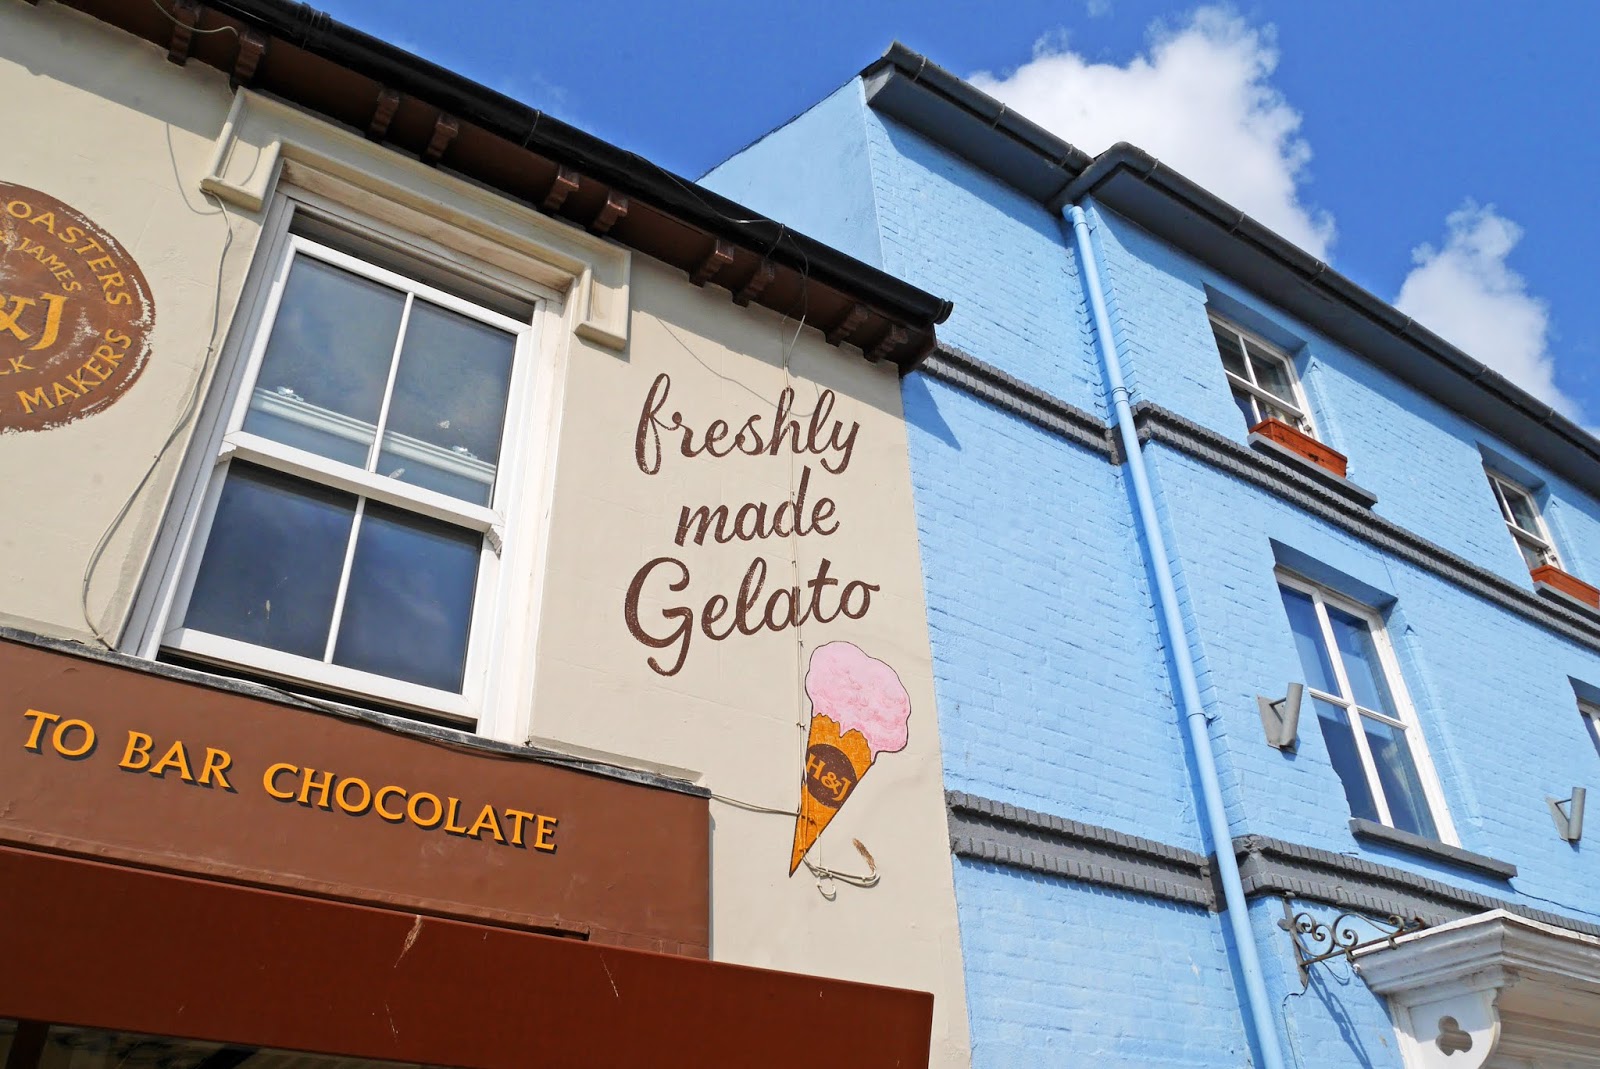 Ice cream shop in Aldeburgh, Suffolk